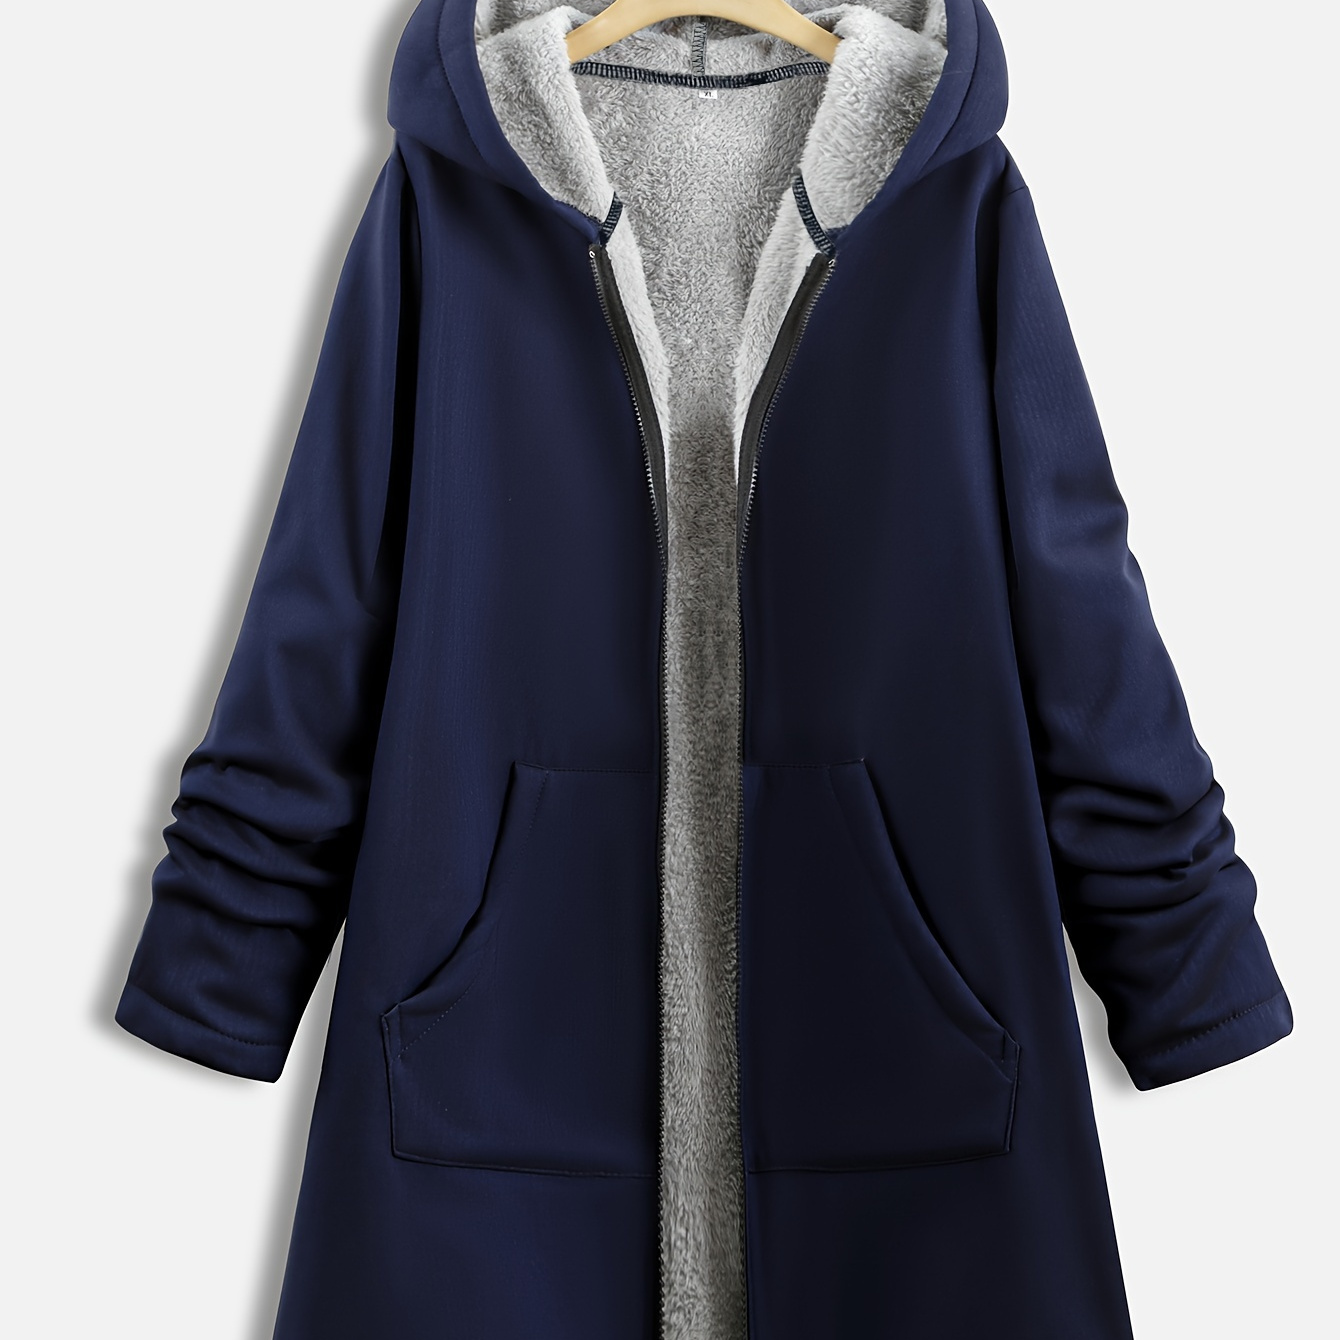 

Manteau à capuche grande taille avec doublure polaire, manteau zippé, manteau en fausse fourrure décontracté d'hiver chaud pour femme